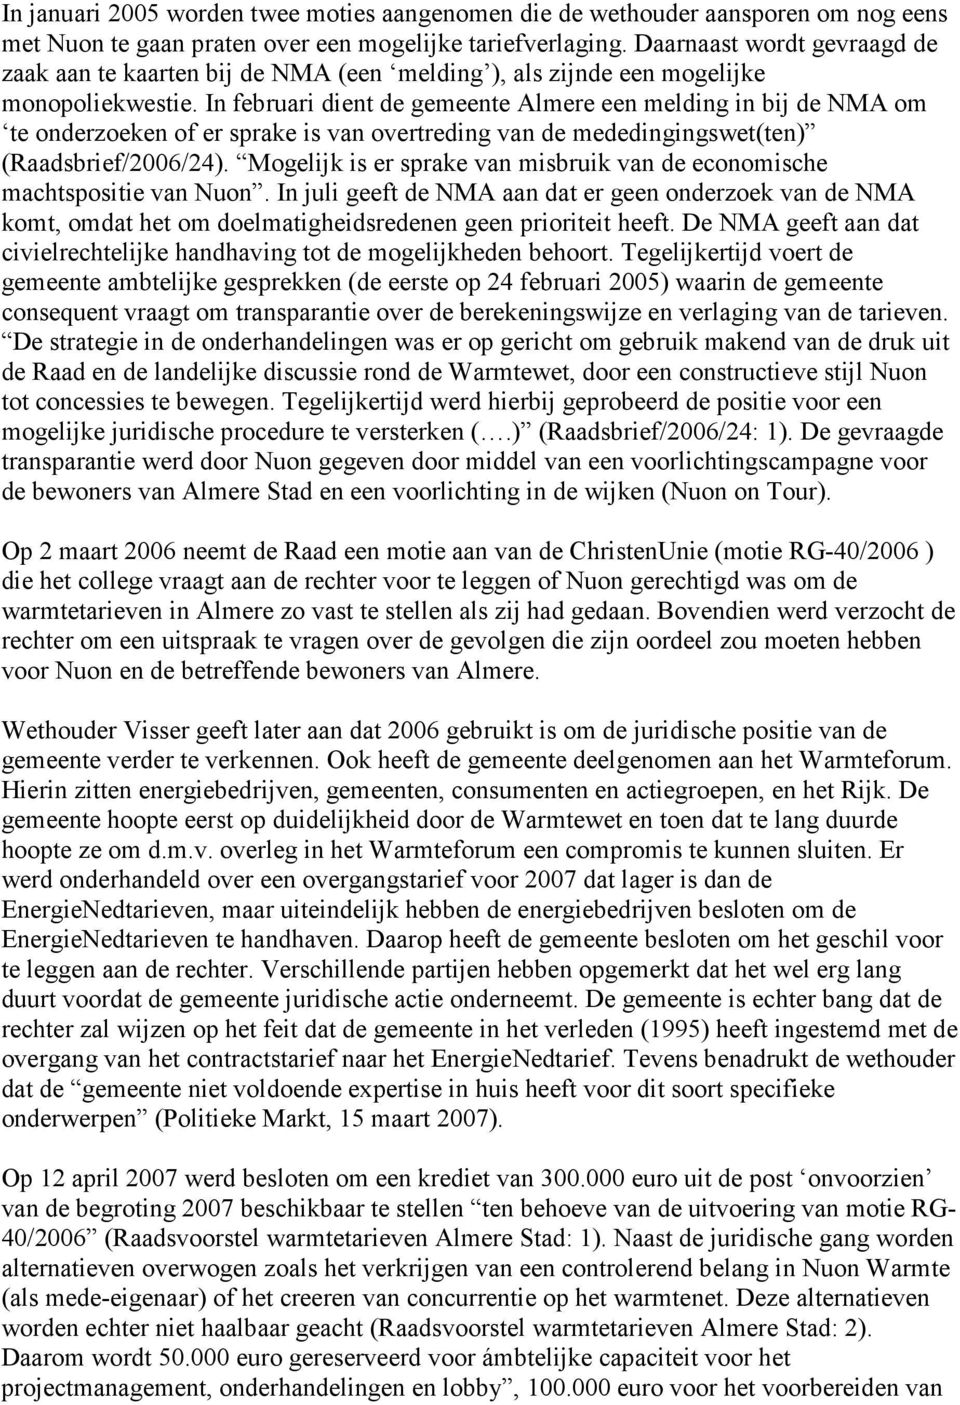 In februari dient de gemeente Almere een melding in bij de NMA om te onderzoeken of er sprake is van overtreding van de mededingingswet(ten) (Raadsbrief/2006/24).